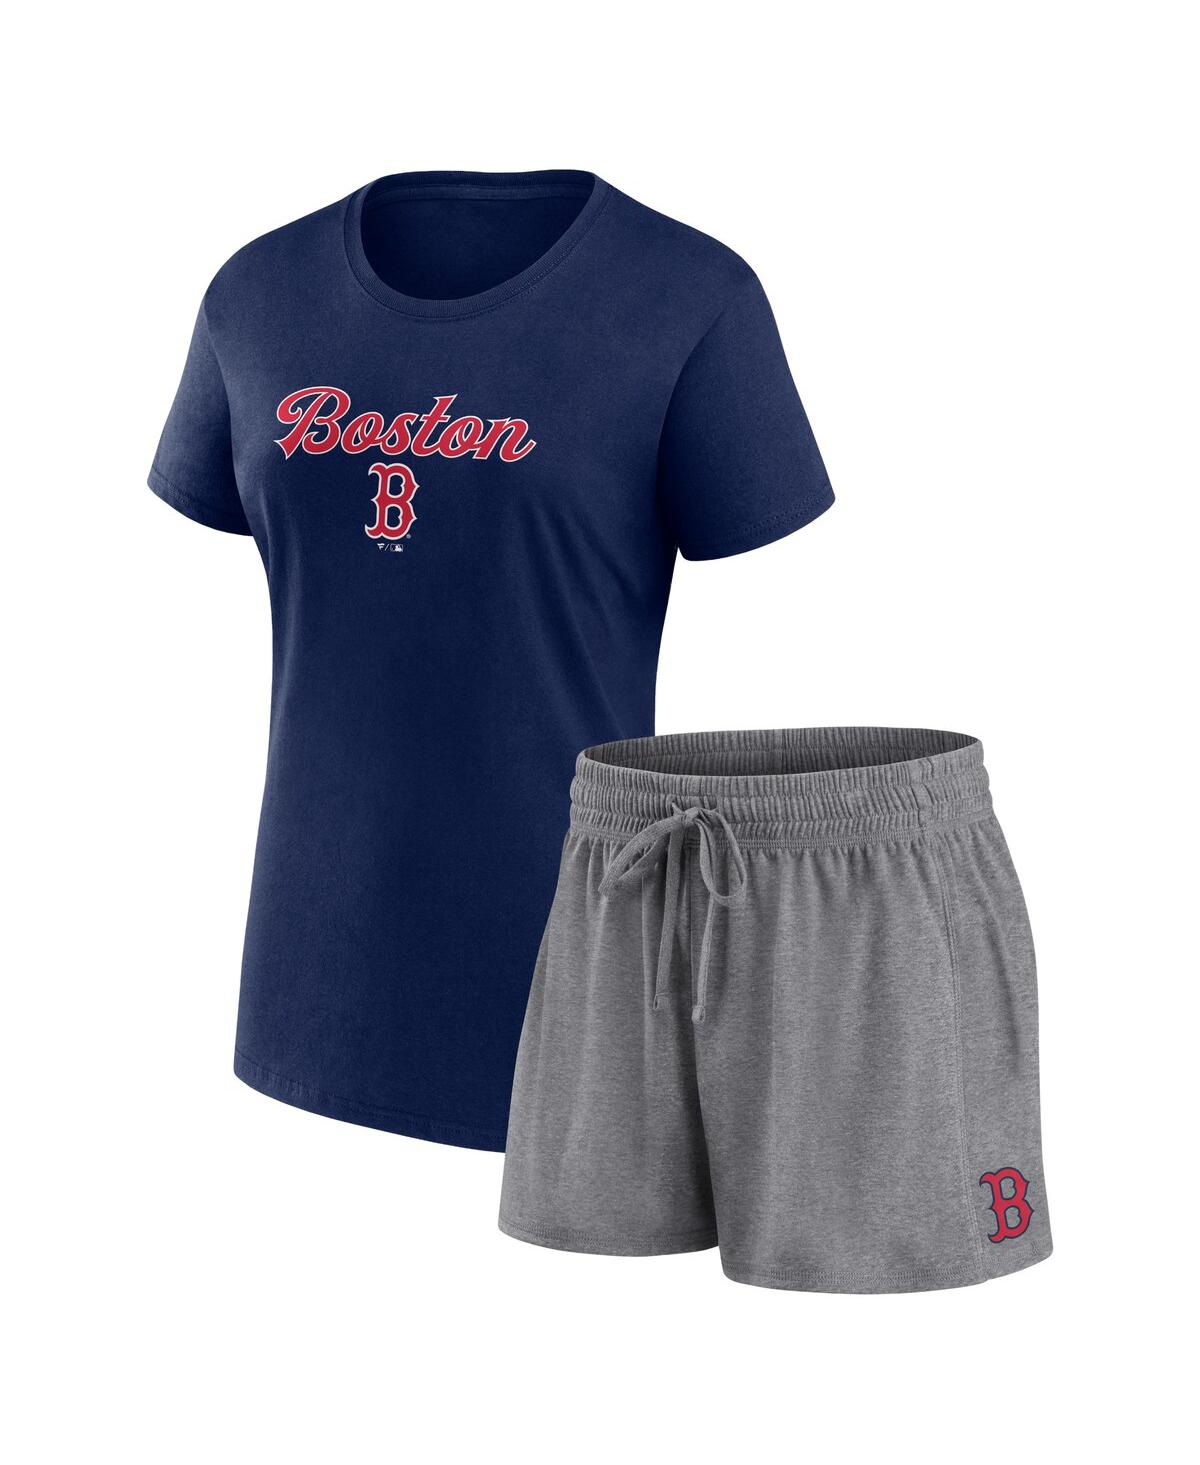 Women's Fanatics Navy, Gray Boston Red Sox Script T-shirt and Shorts Combo Set - Navy, Gray